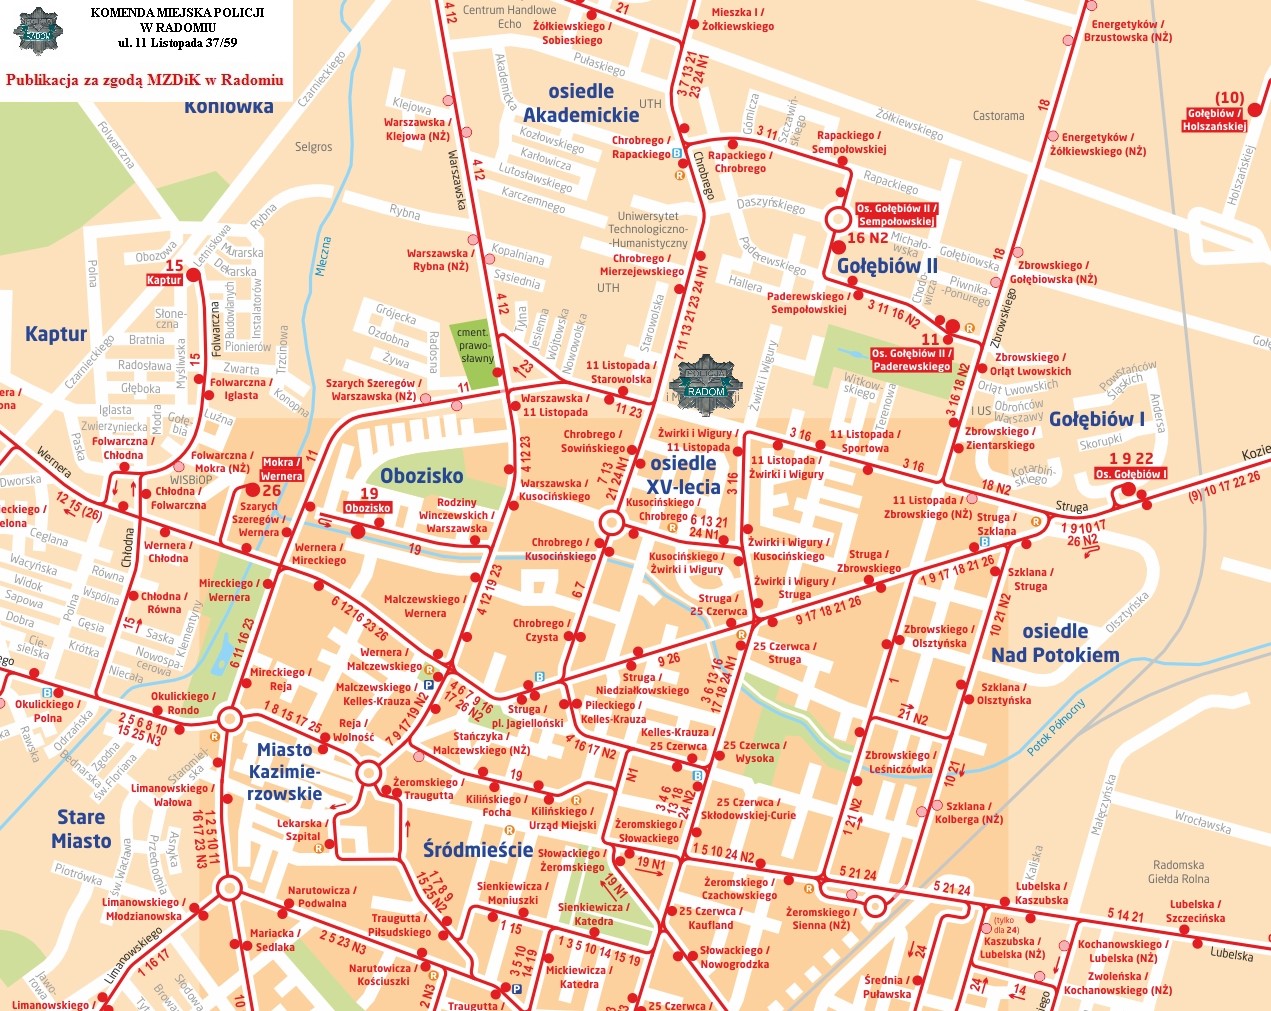 Mapa przedstawiająca dojazd do Komendy Miejskiej Policji w Radomiu